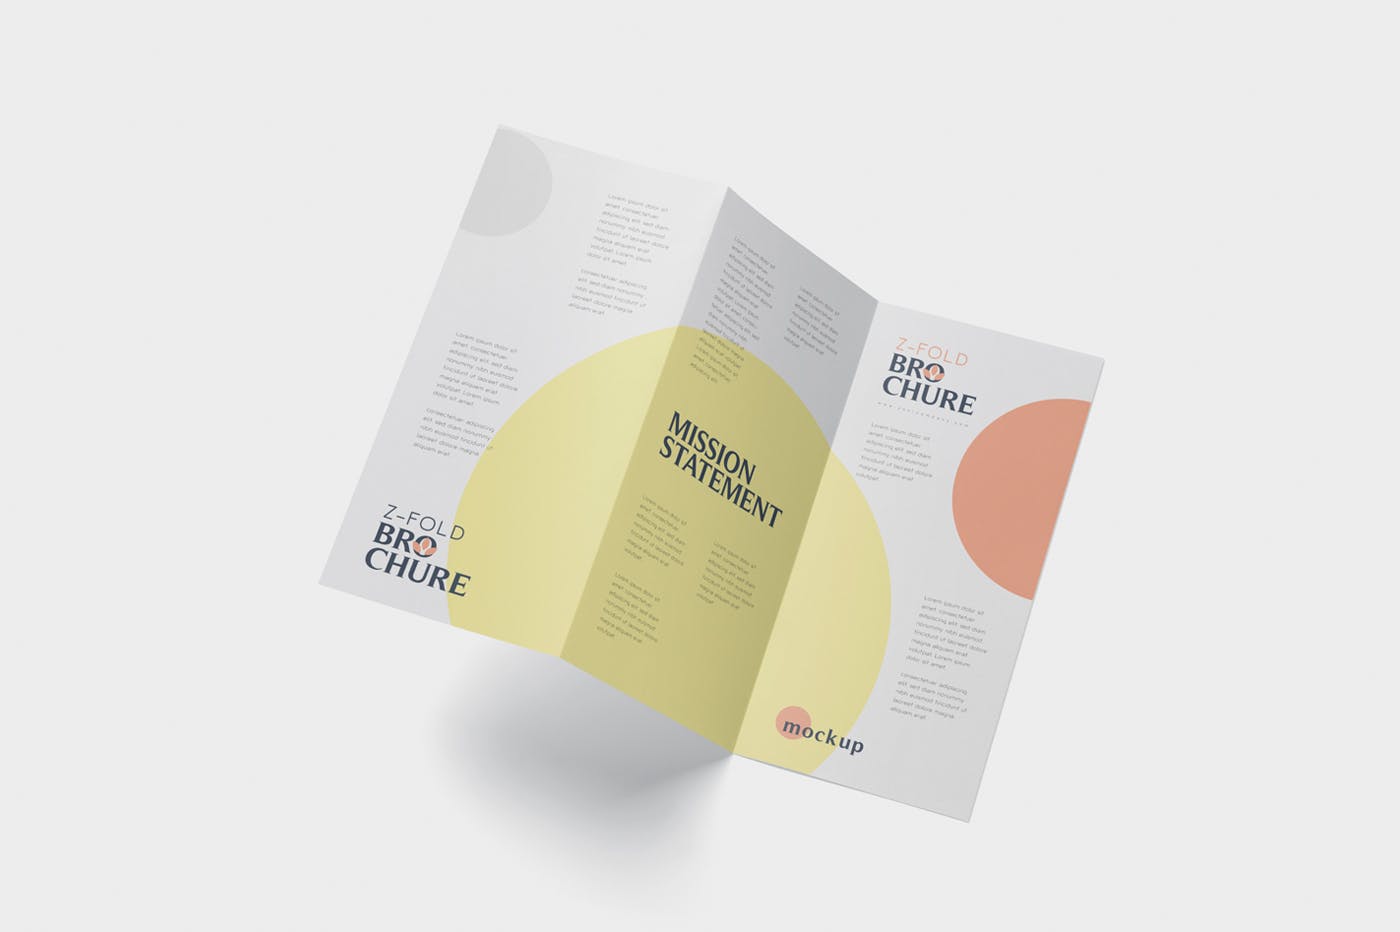 三折页设计风格企业传单/宣传单设计图样机非凡图库精选 DL Z-Fold Brochure Mockup – 99 x 210 mm Size插图(3)